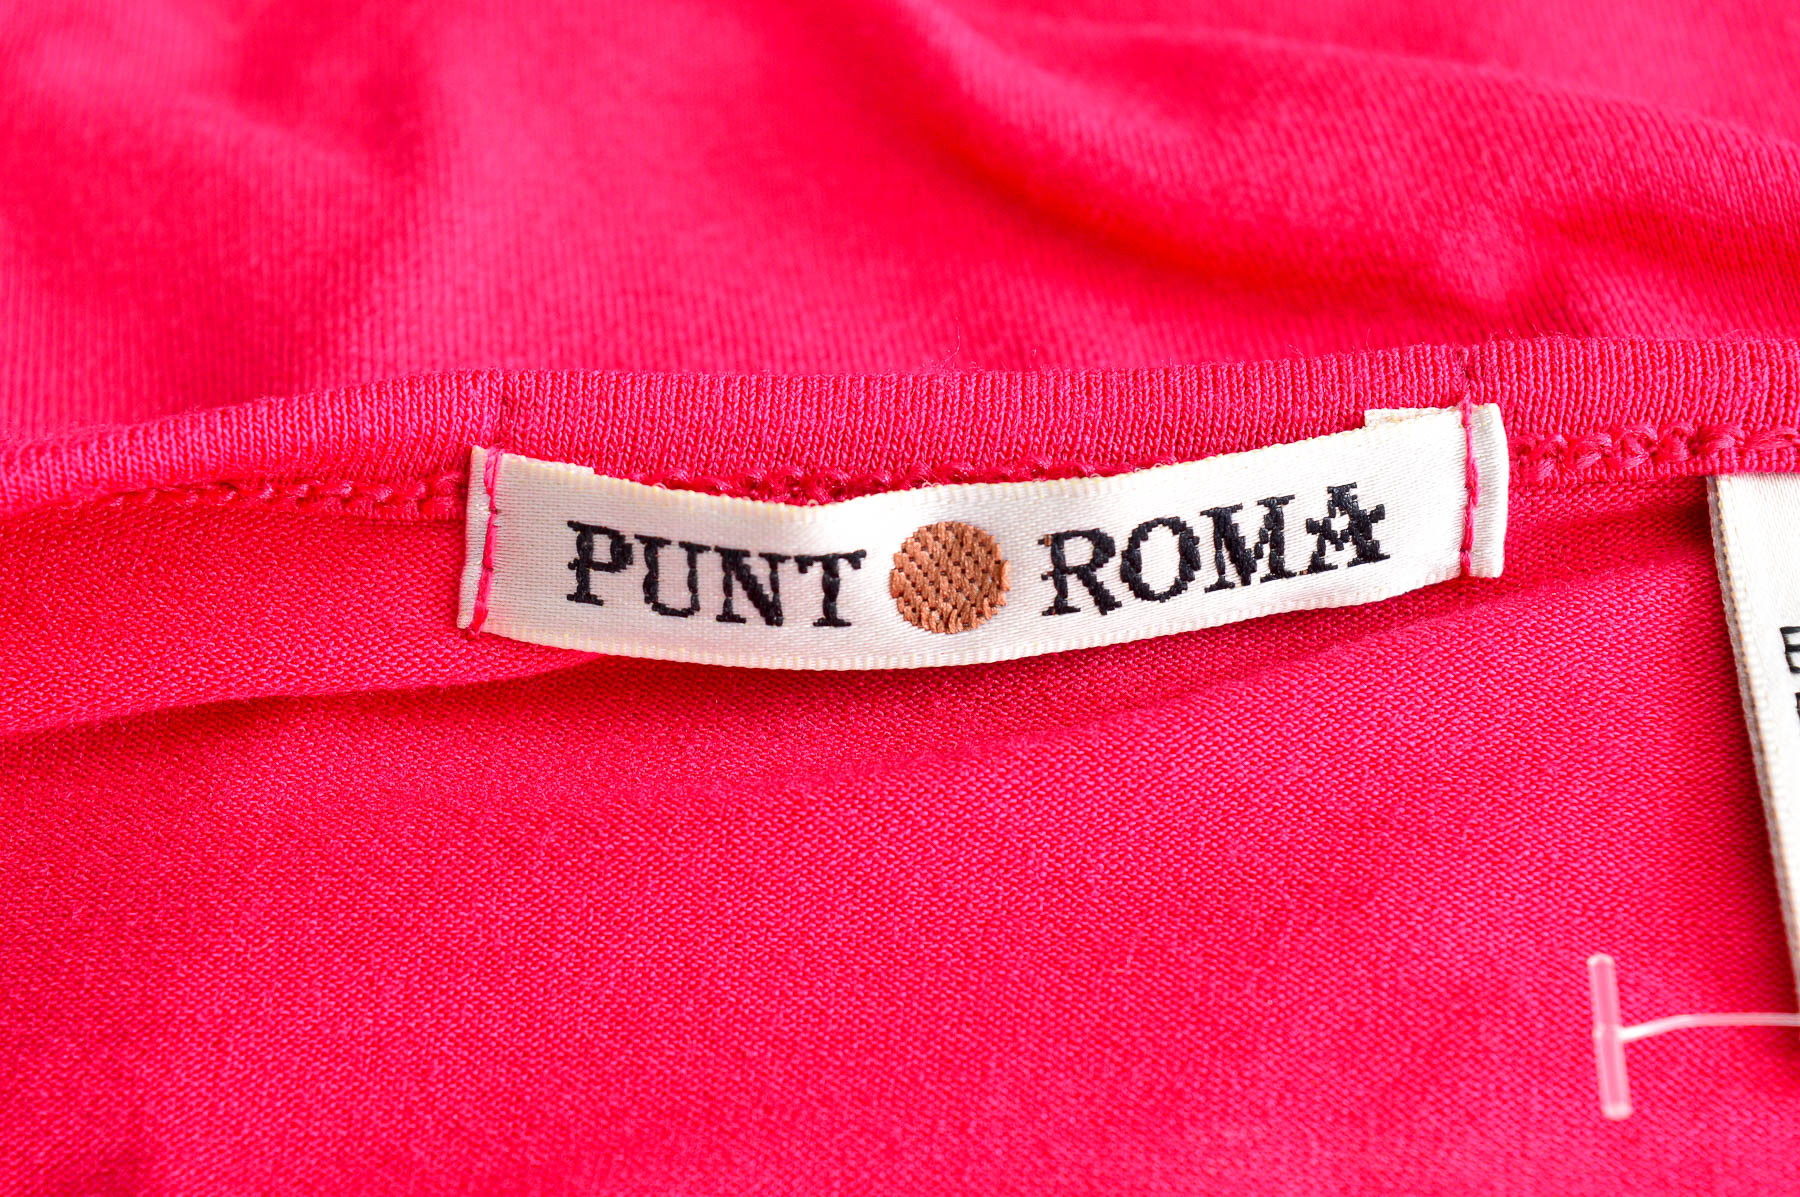 Γυναικεία μπλούζα - Punt Roma - 2